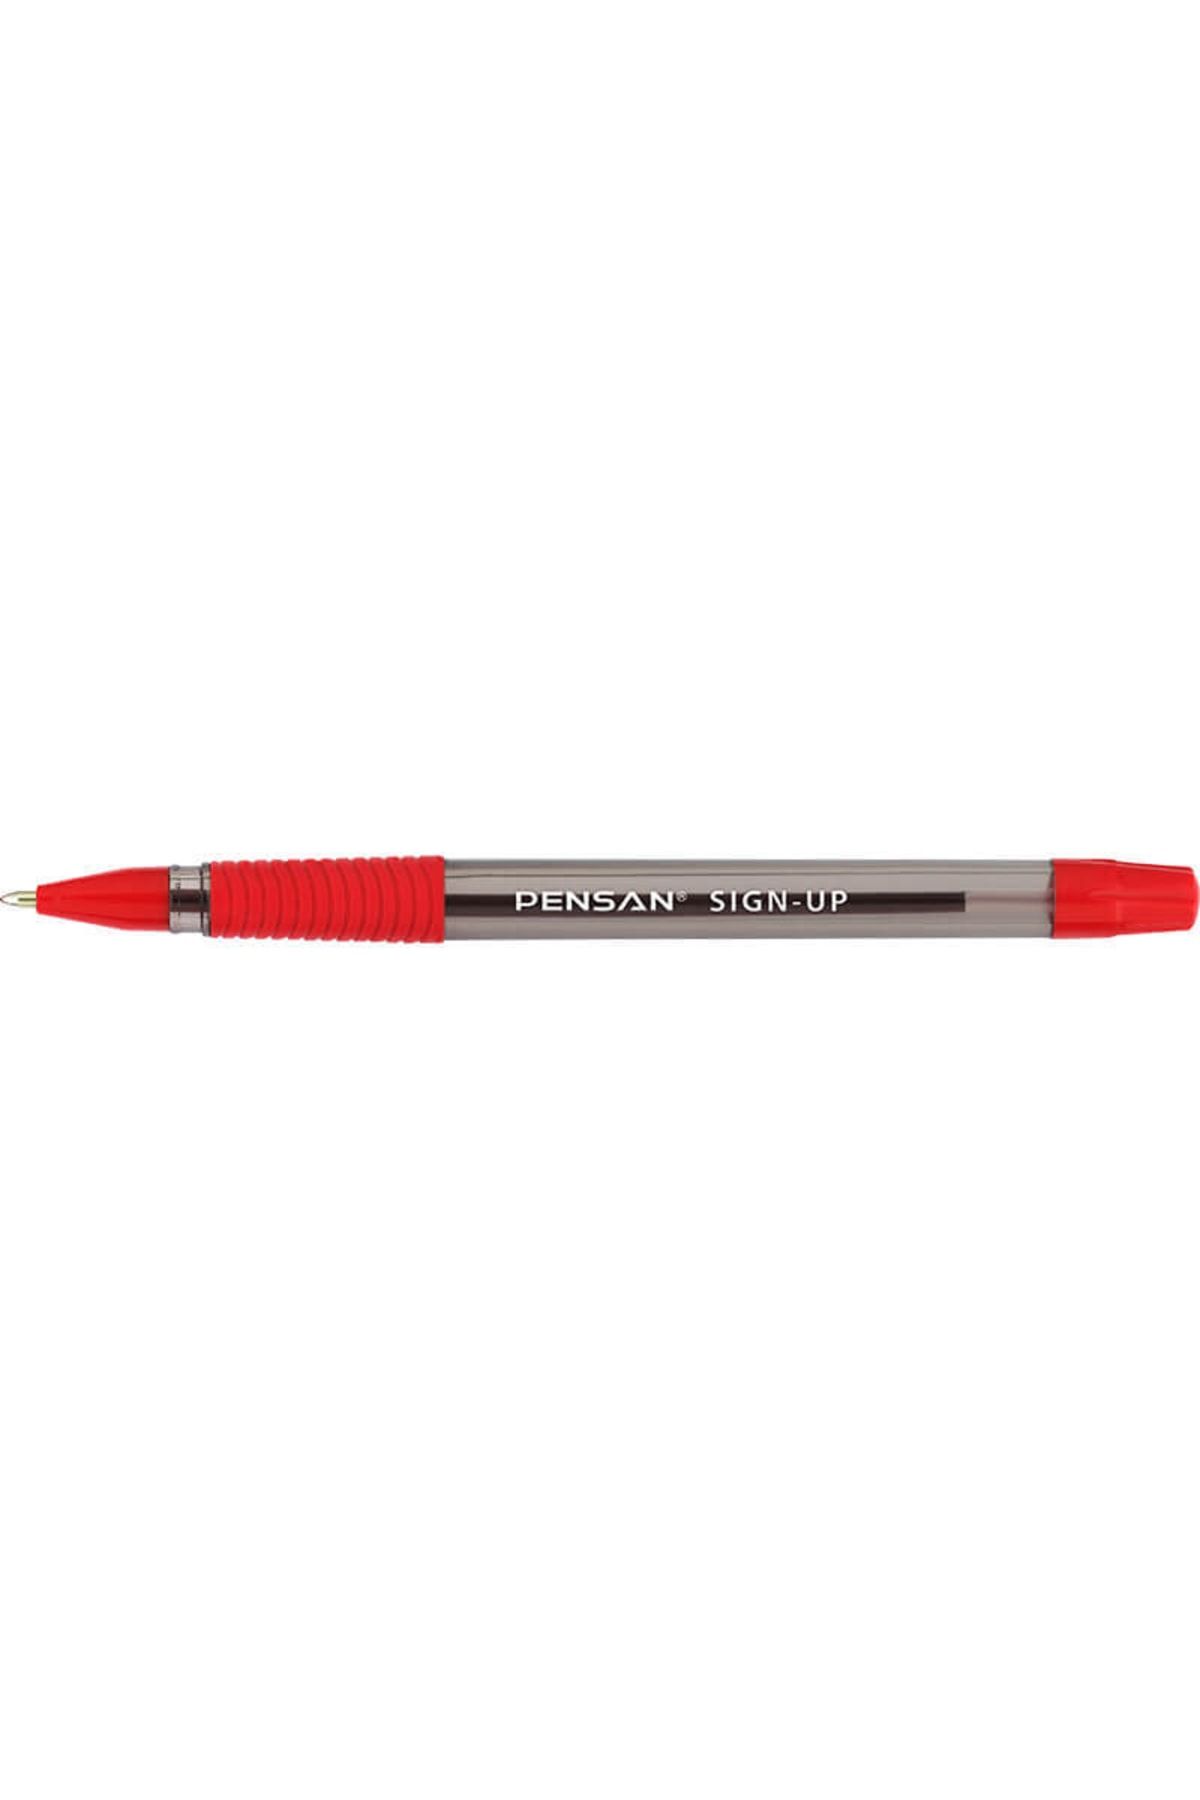 Pensan 2410 Sıgn Up Tükenmez Kalem Kırmızı